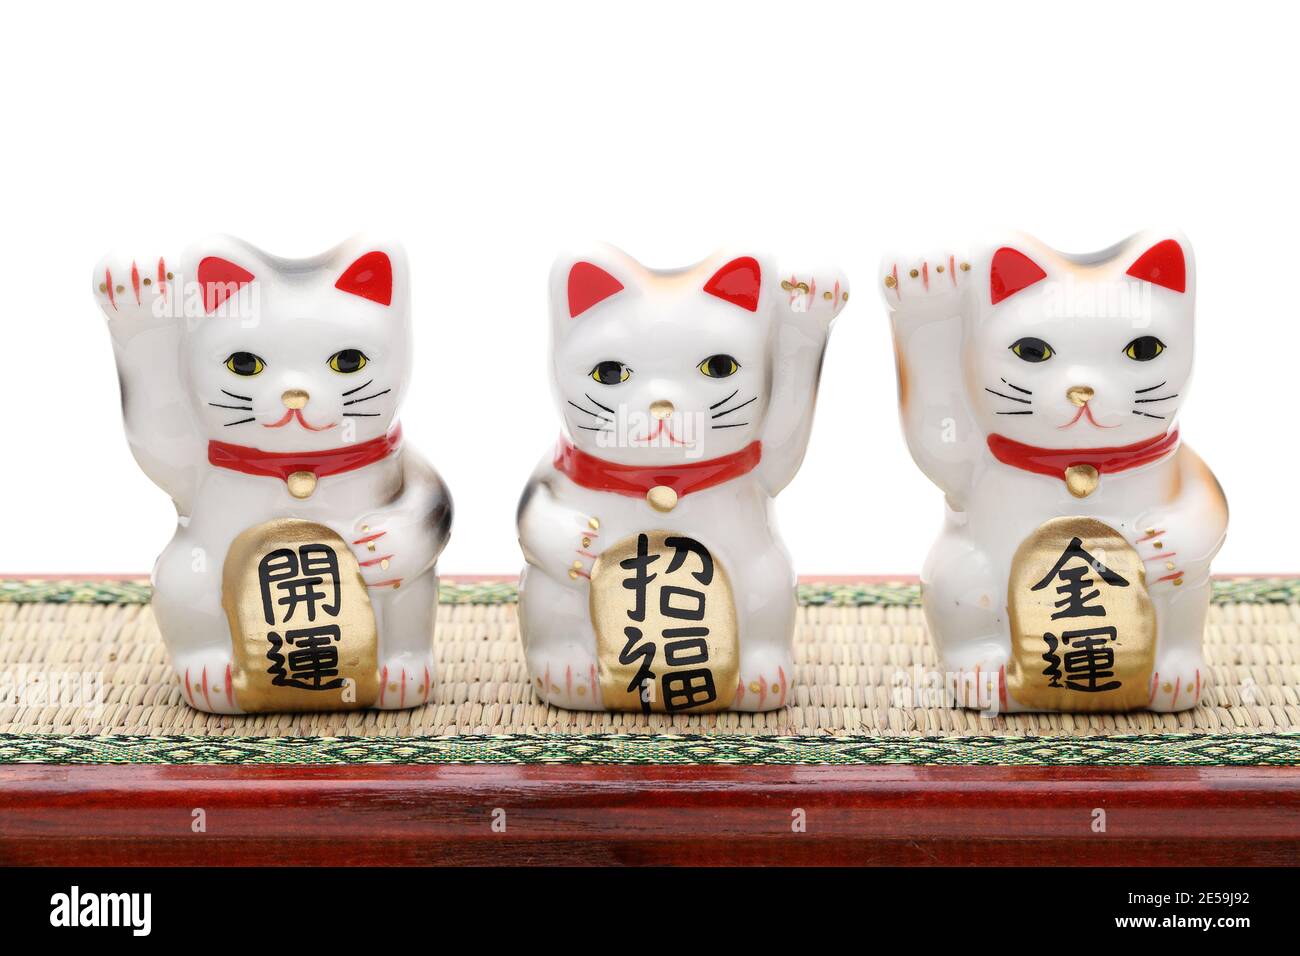 Gatto fortunato giapponese su sfondo bianco, parola giapponese di questa fotografia significa "fortuna migliore, benedizione, fortuna economica" Foto Stock